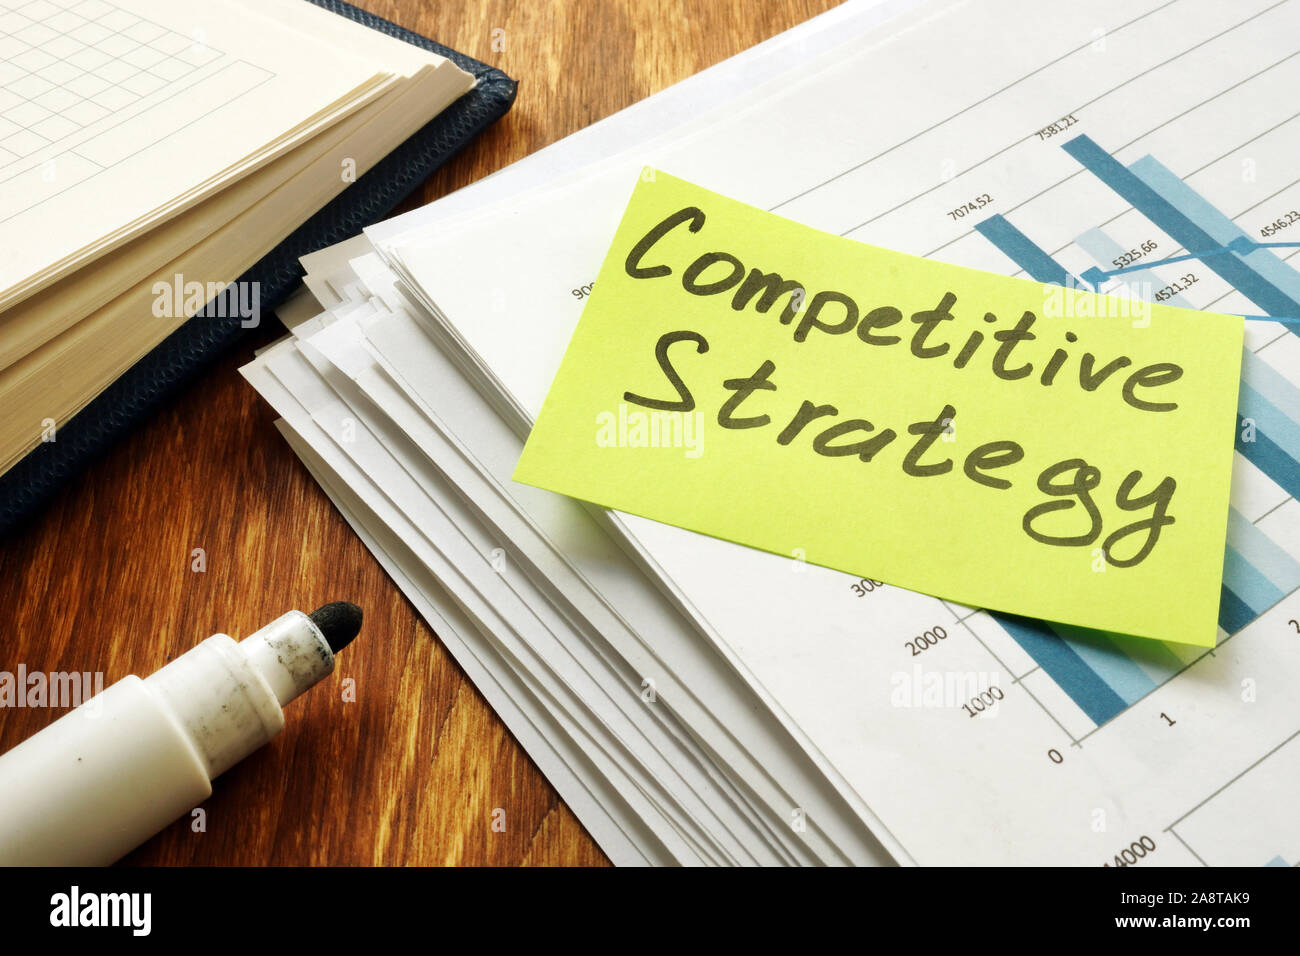 Estrategia Competitiva documentos comerciales sobre el escritorio. Foto de stock